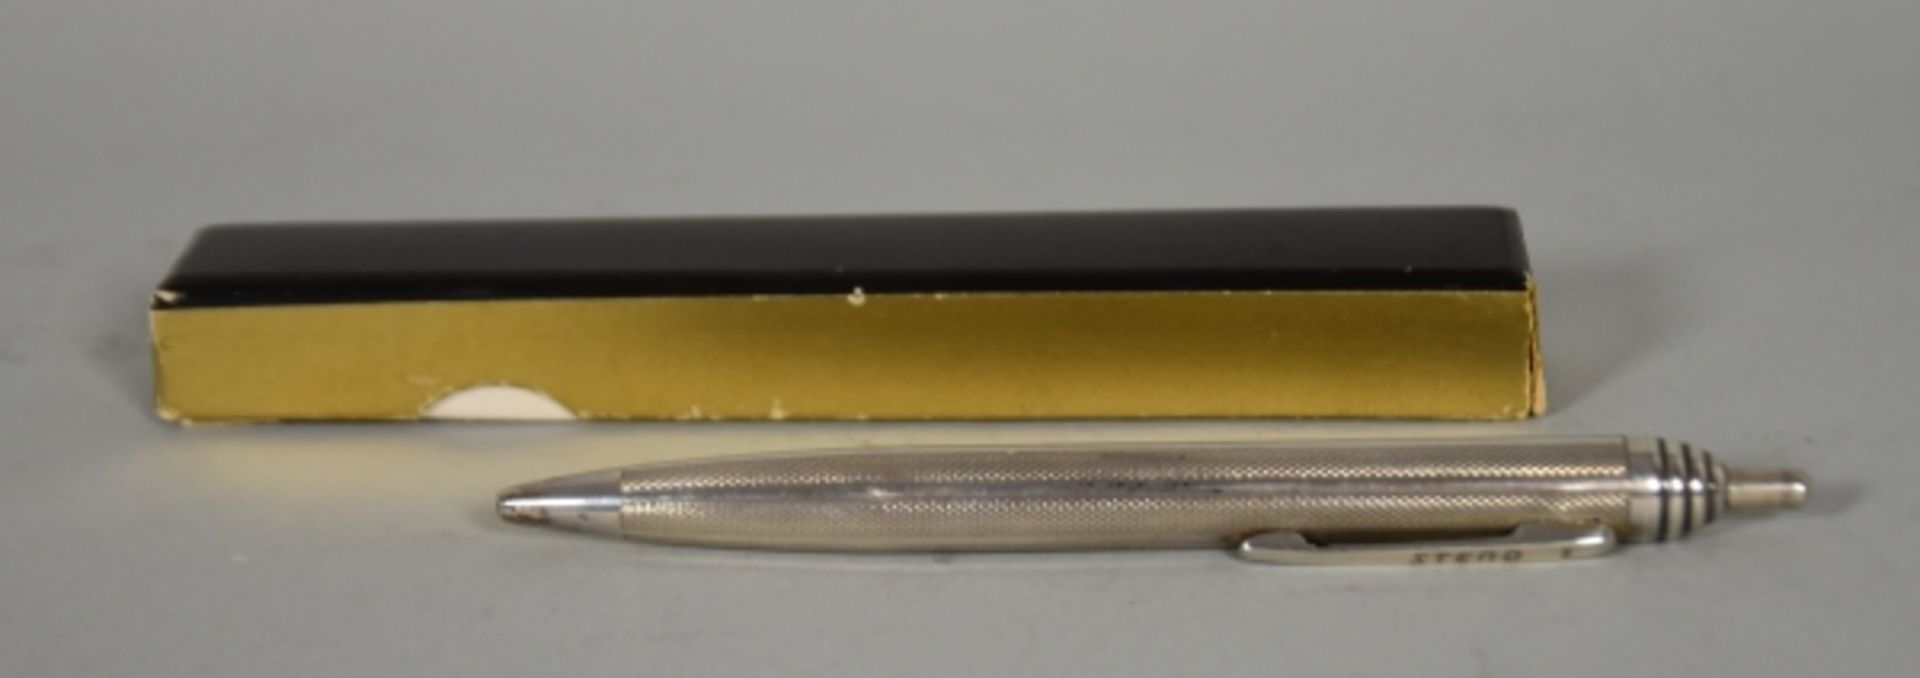 SCHREIB-SET verschieden, bestehend aus Füller mit Schildpatt-Design u. 14ct Goldfeder, anbei Steno- - Bild 5 aus 9